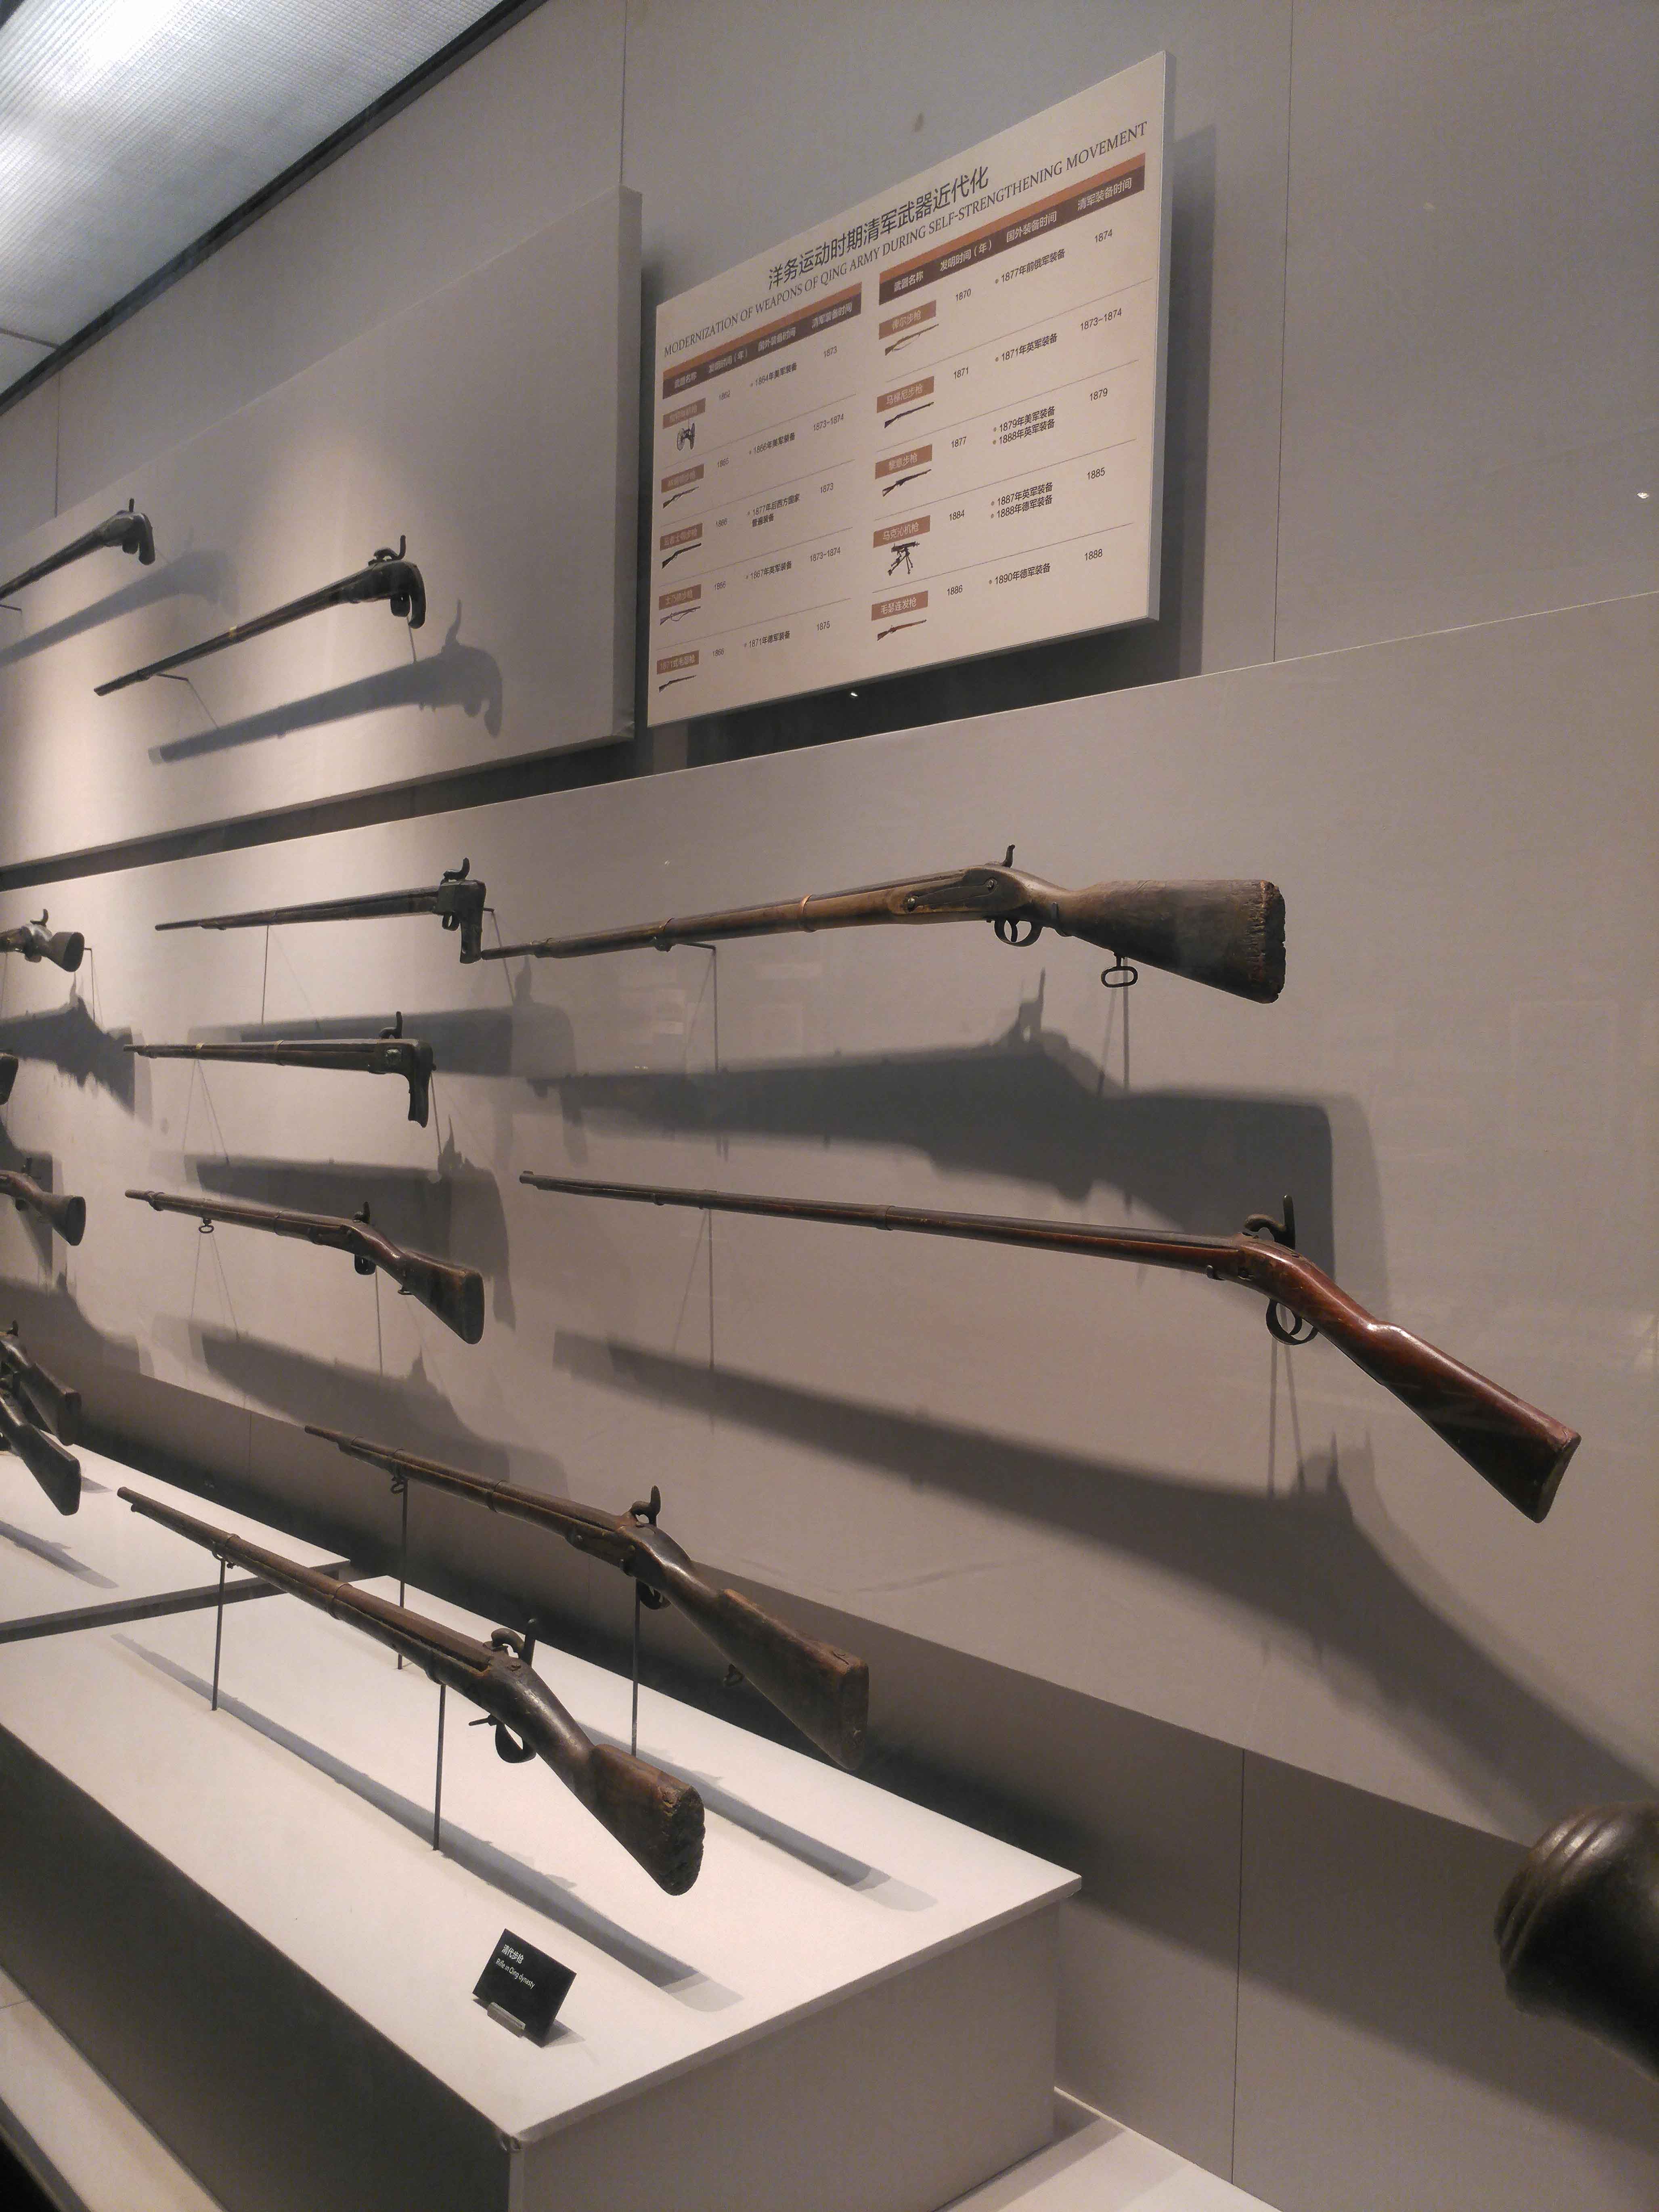 当年清军与英军使用过的长火枪,现只有保存在展架里向现代人开放且